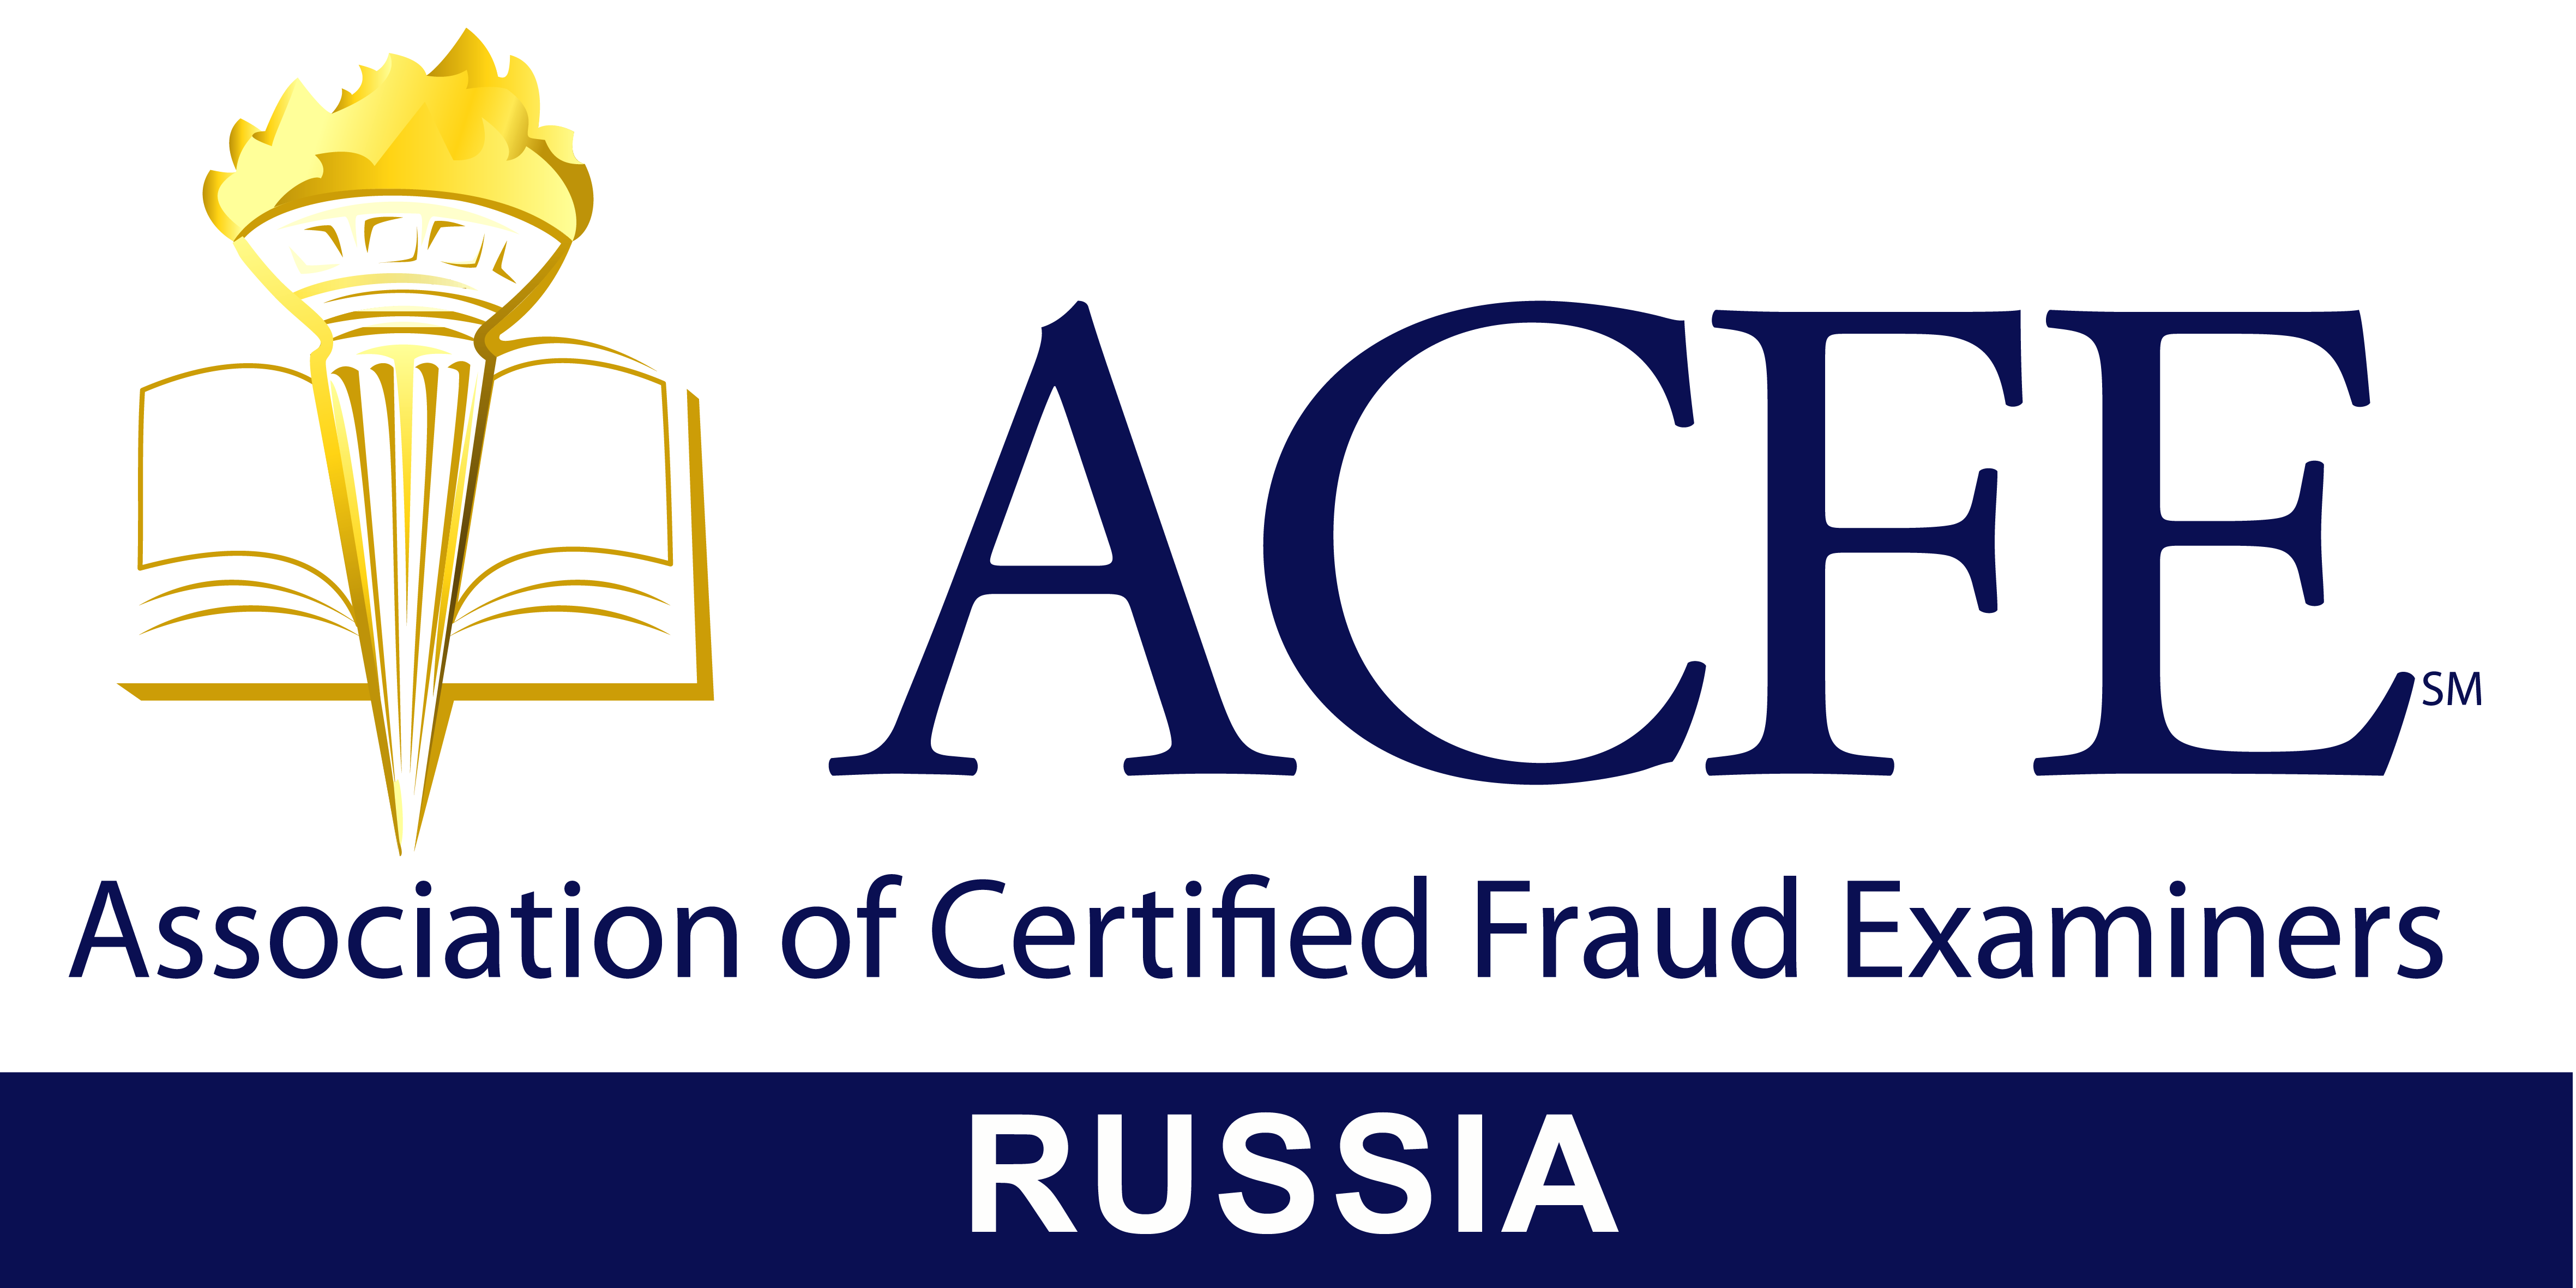 Ассоциация специалистов по расследованию хищений / мошенничества - ACFE